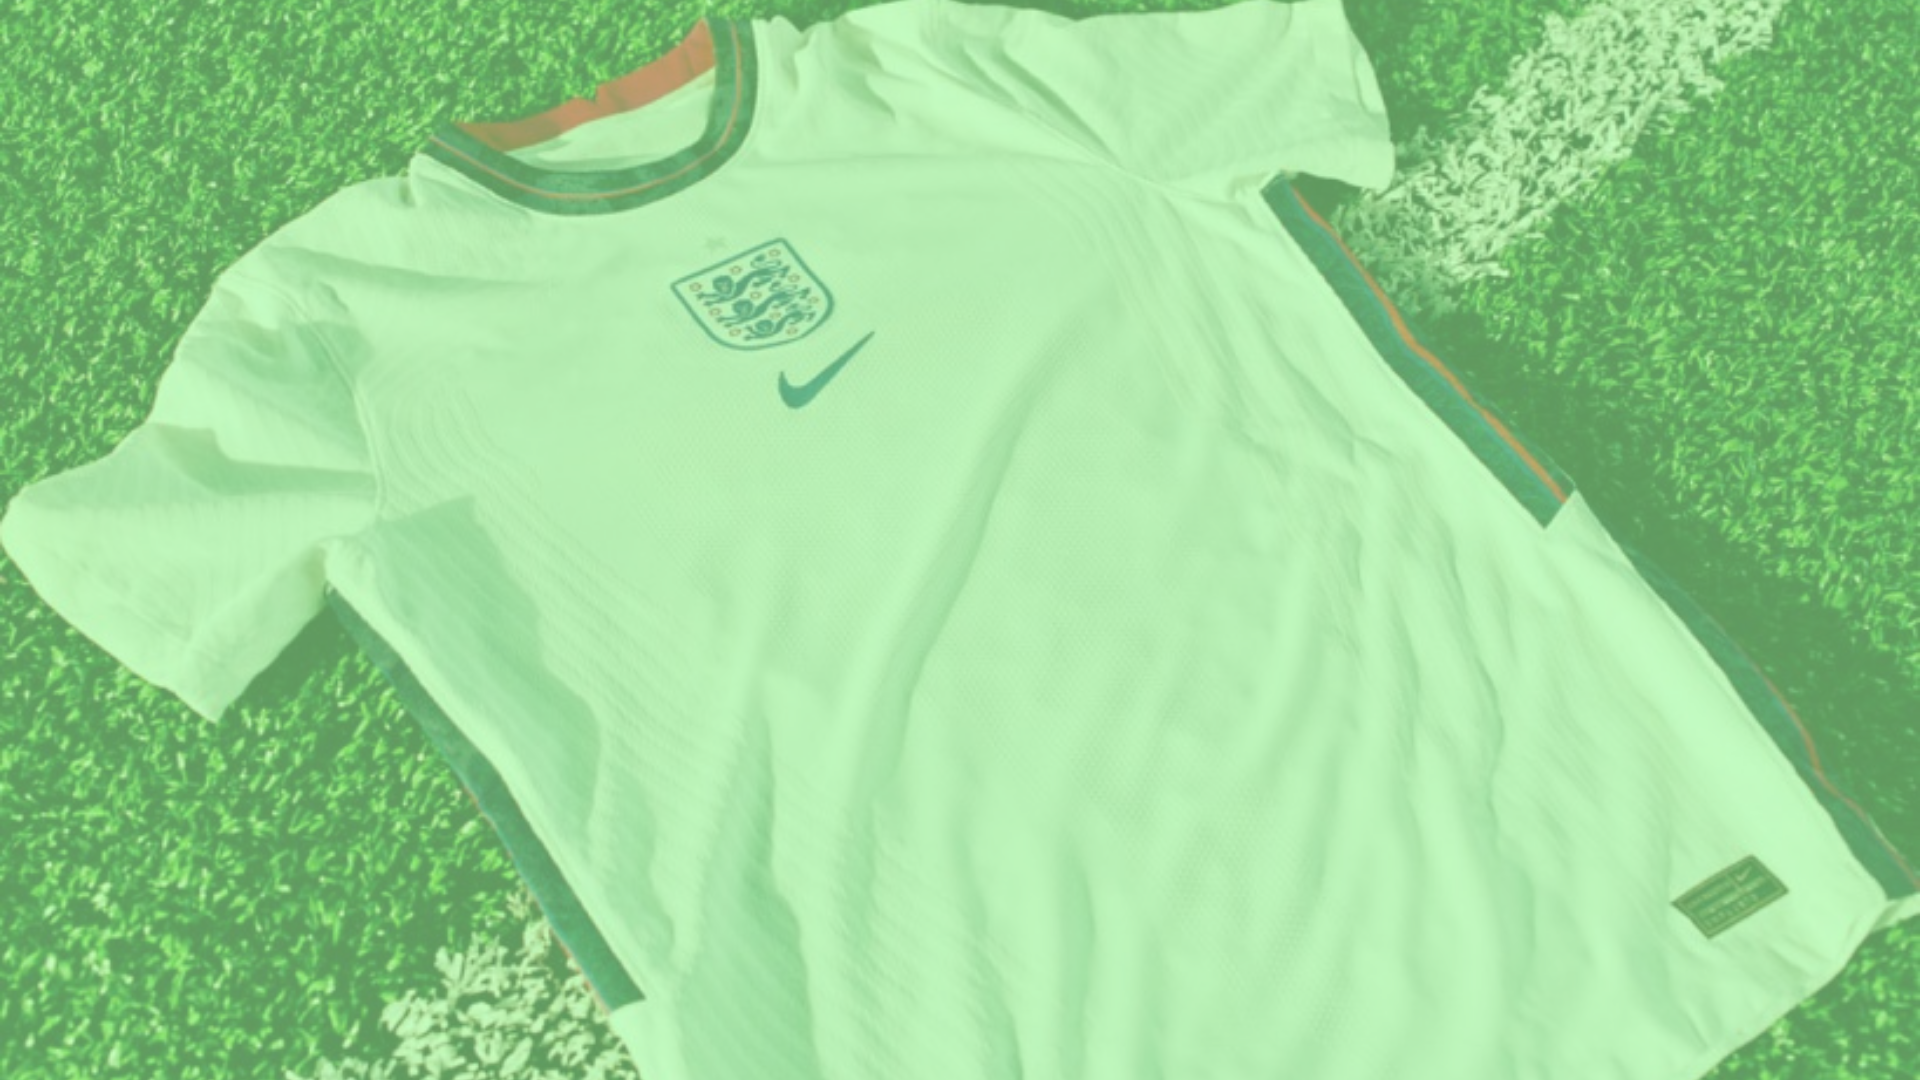 How to spot a fake England football shirt